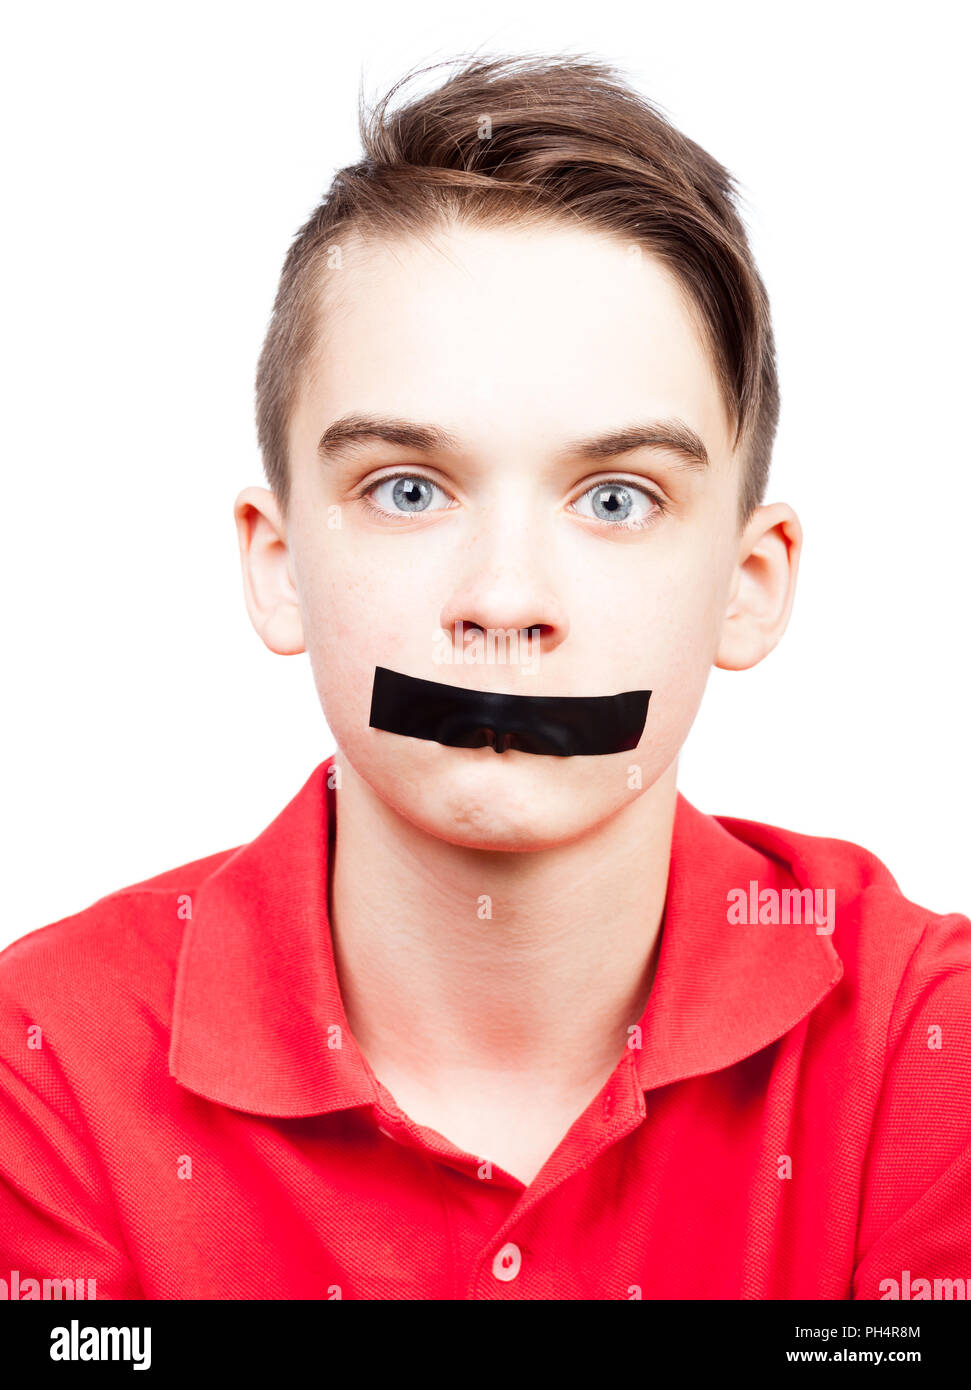 Ritratto di ragazzo adolescente con nastro adesivo sulla bocca - silenziato concetto di bambino Foto Stock